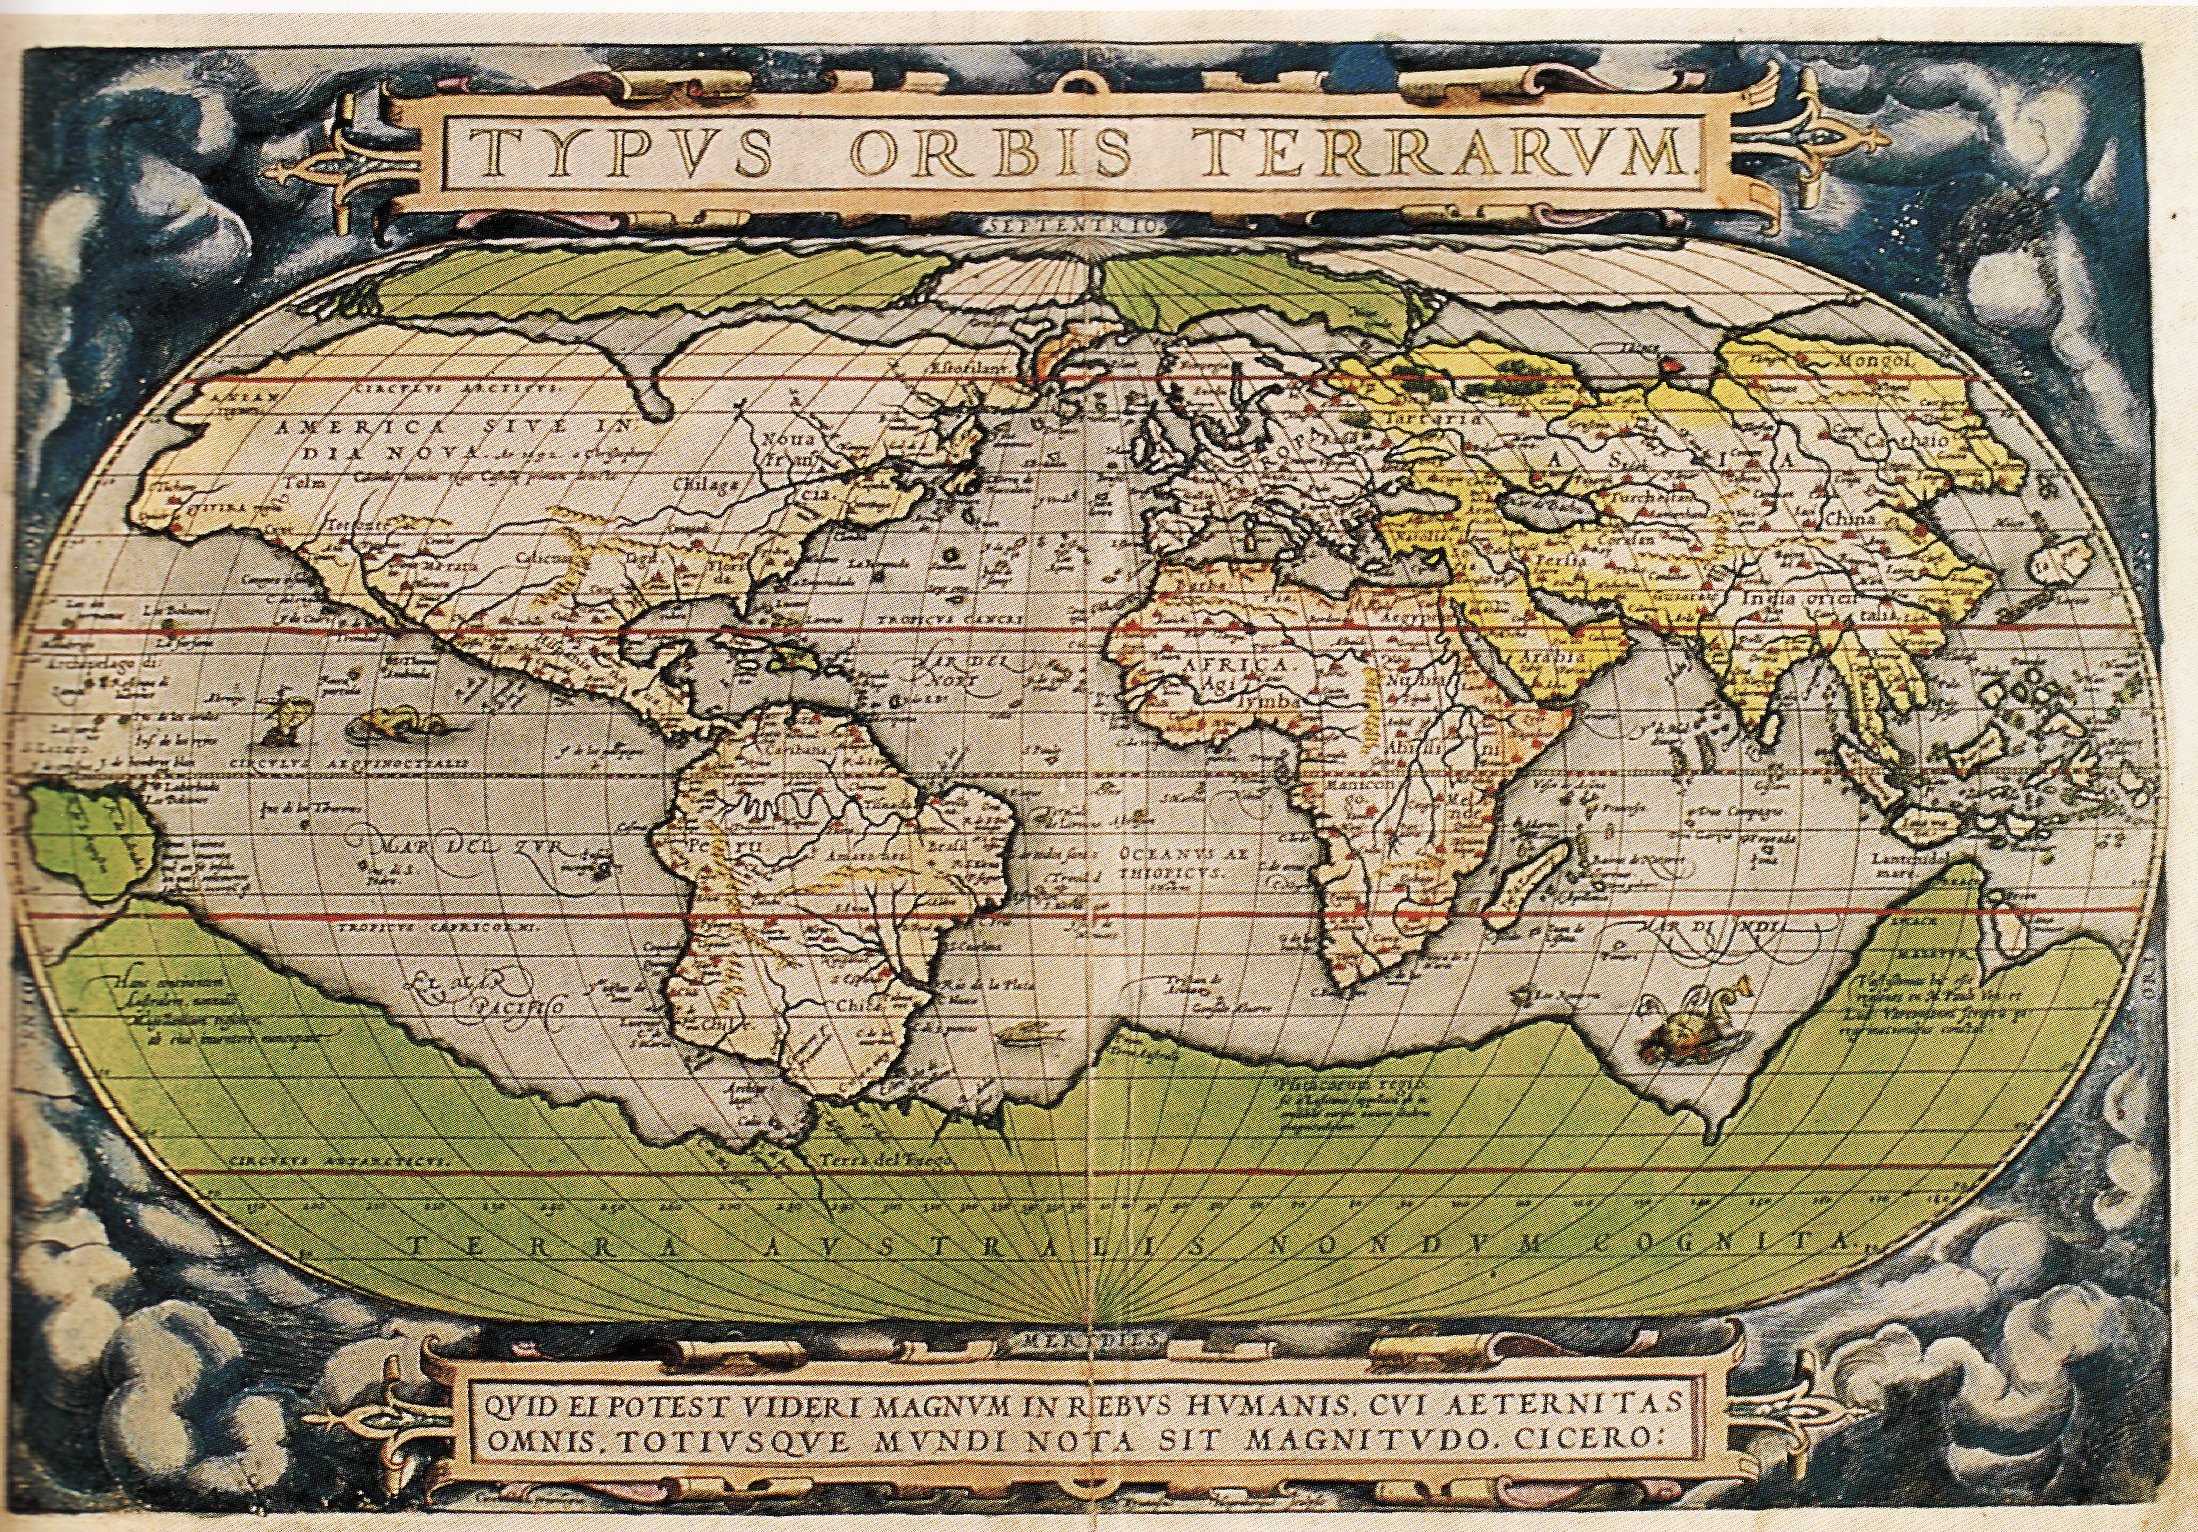 Первый мир карта